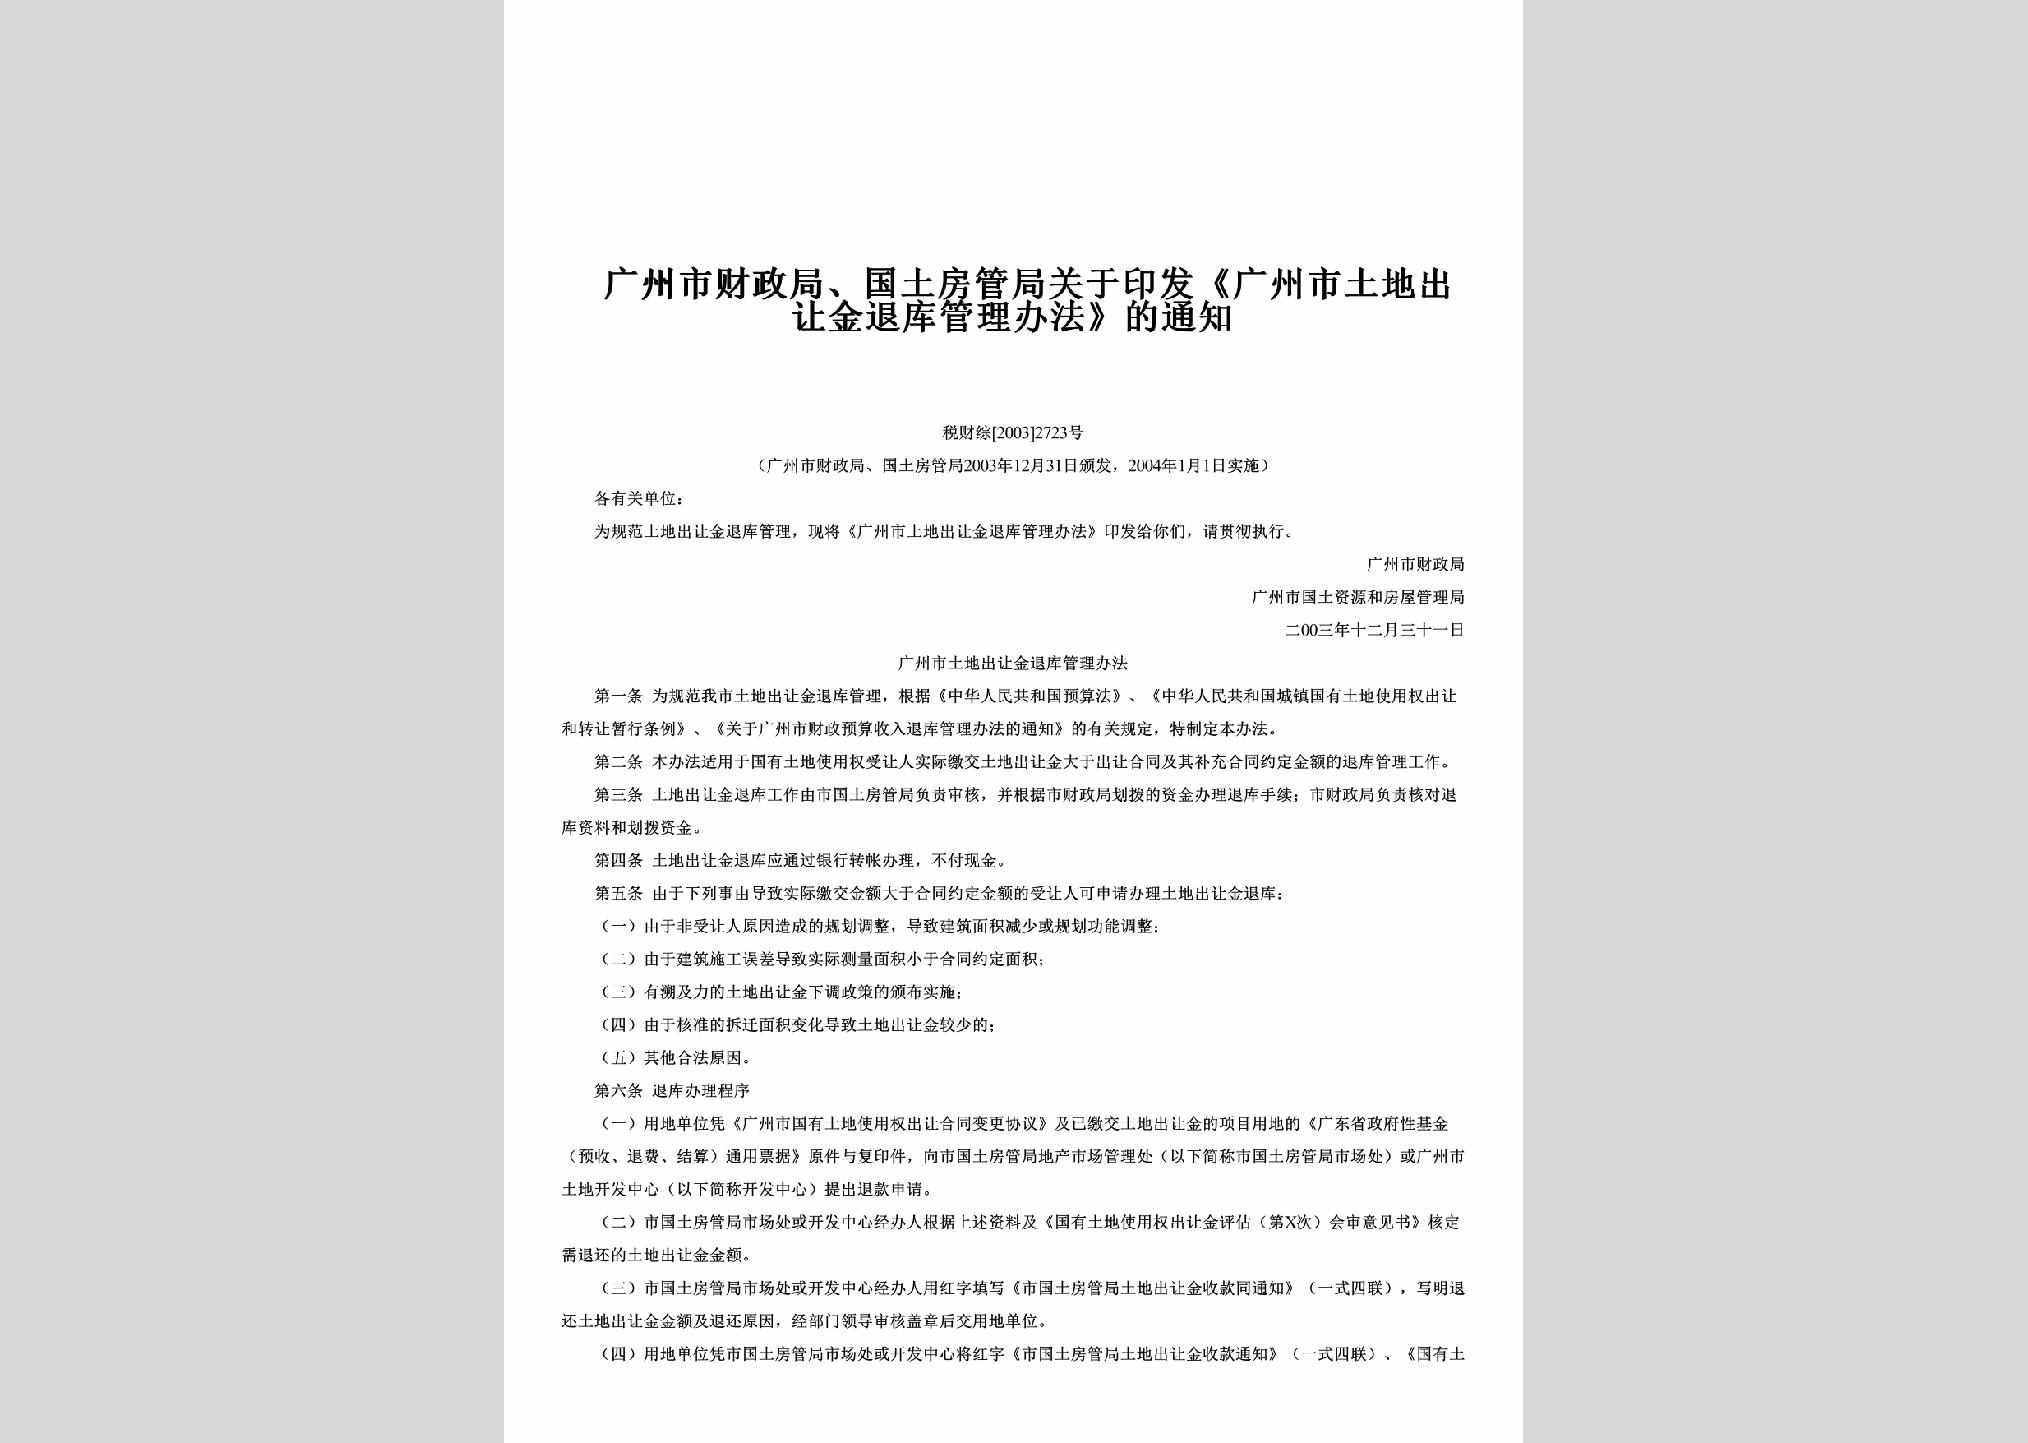 税财综[2003]2723号：关于印发《广州市土地出让金退库管理办法》的通知